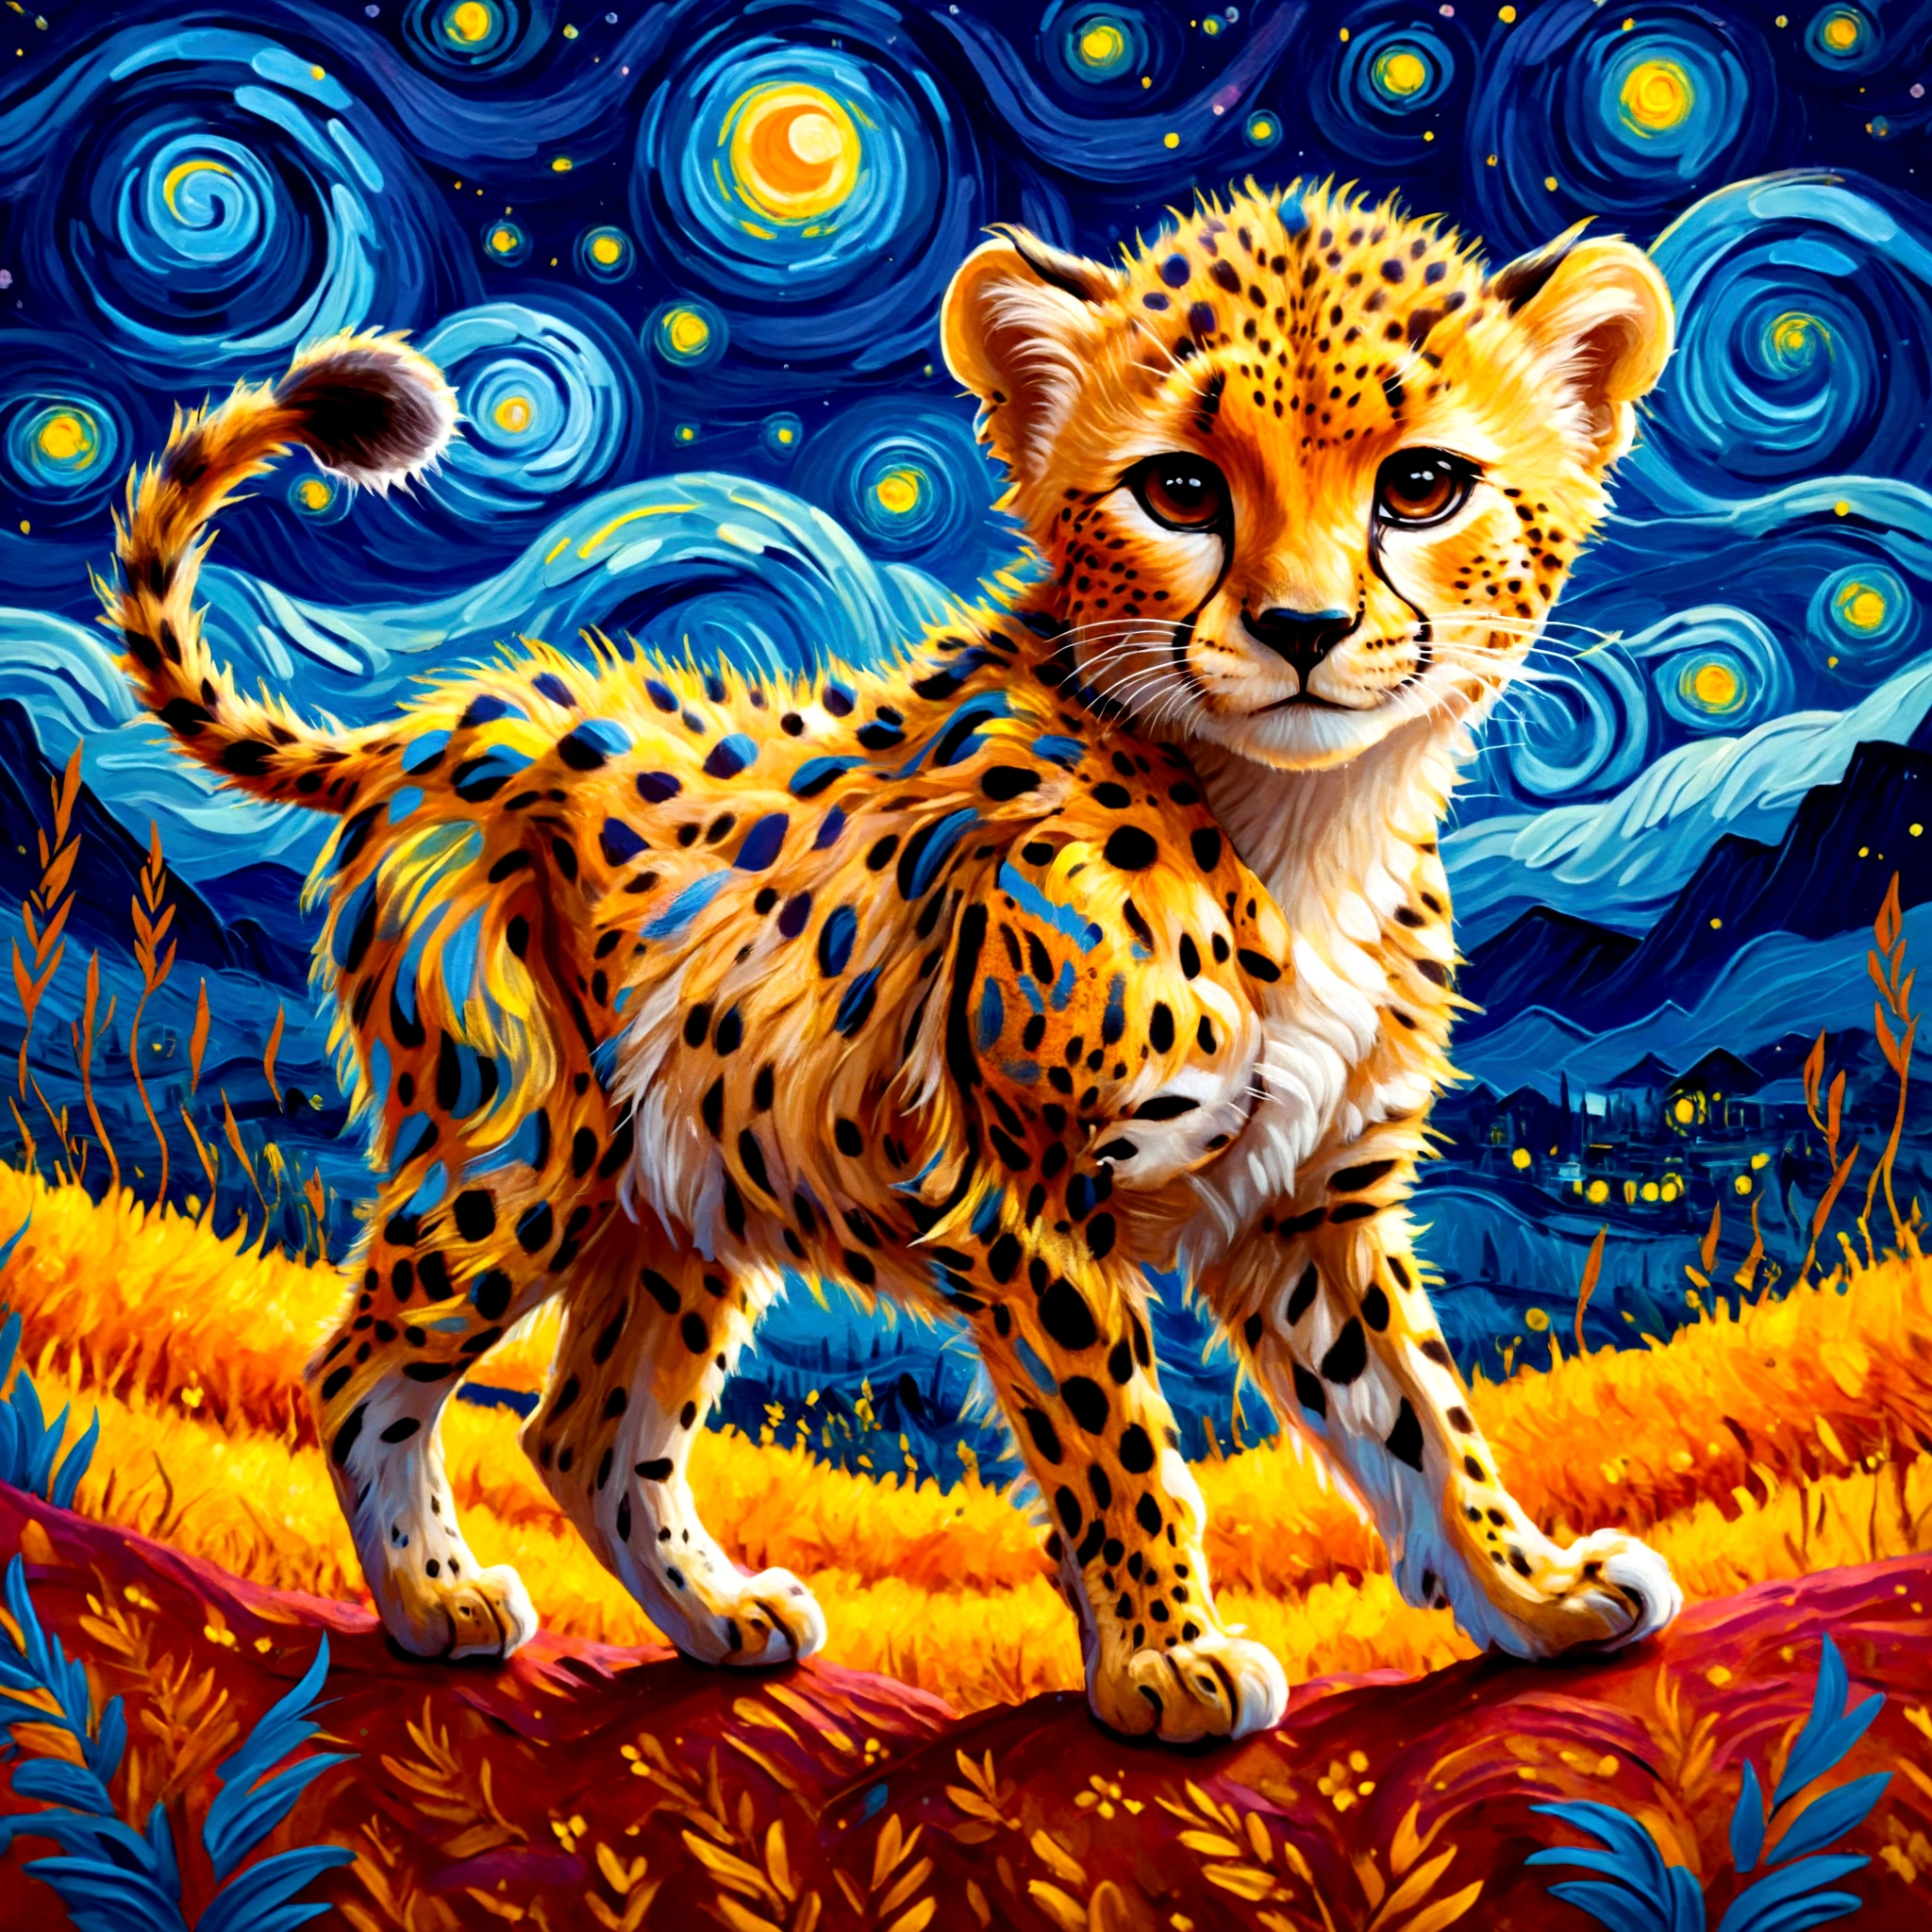 Una ilustración estilizada de un cachorro de guepardo al estilo de Van Gogh., con pinceladas arremolinadas y colores vibrantes, 
Vivid contrast, renderizado suave al tacto, detalle preciso, alto detalle, contornos brillantes, precision, Alta calidad, representación táctil increíblemente hermosa, Fantasía,